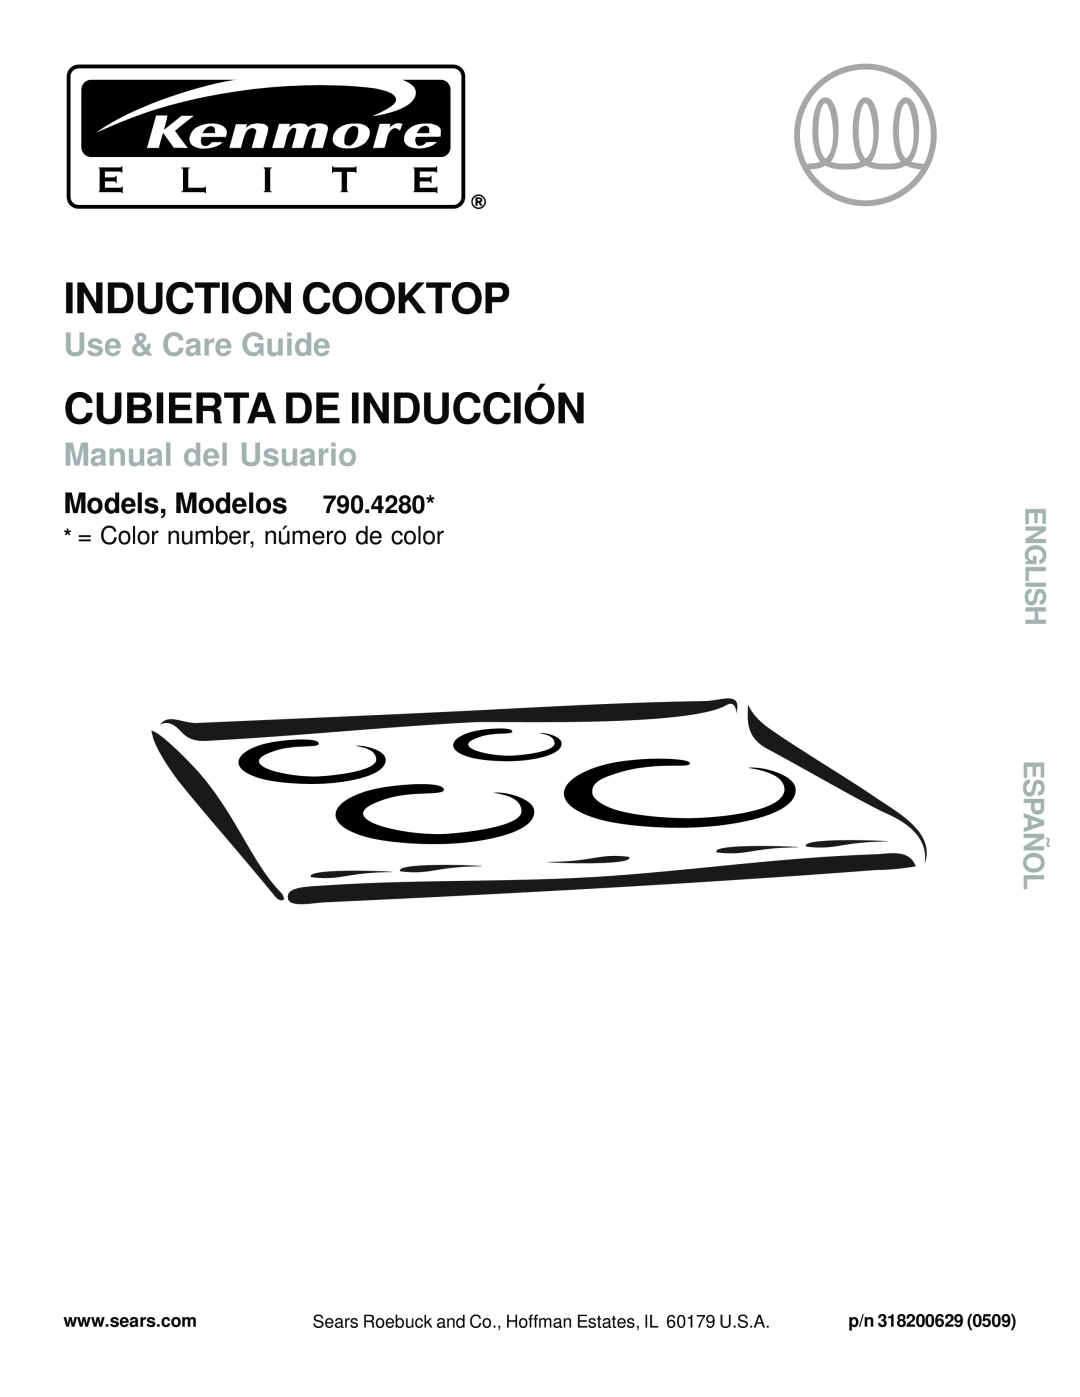 Sears 790.428 manual Models, Modelos, English Español, Induction Cooktop, Cubierta De Inducción, Use & Care Guide 